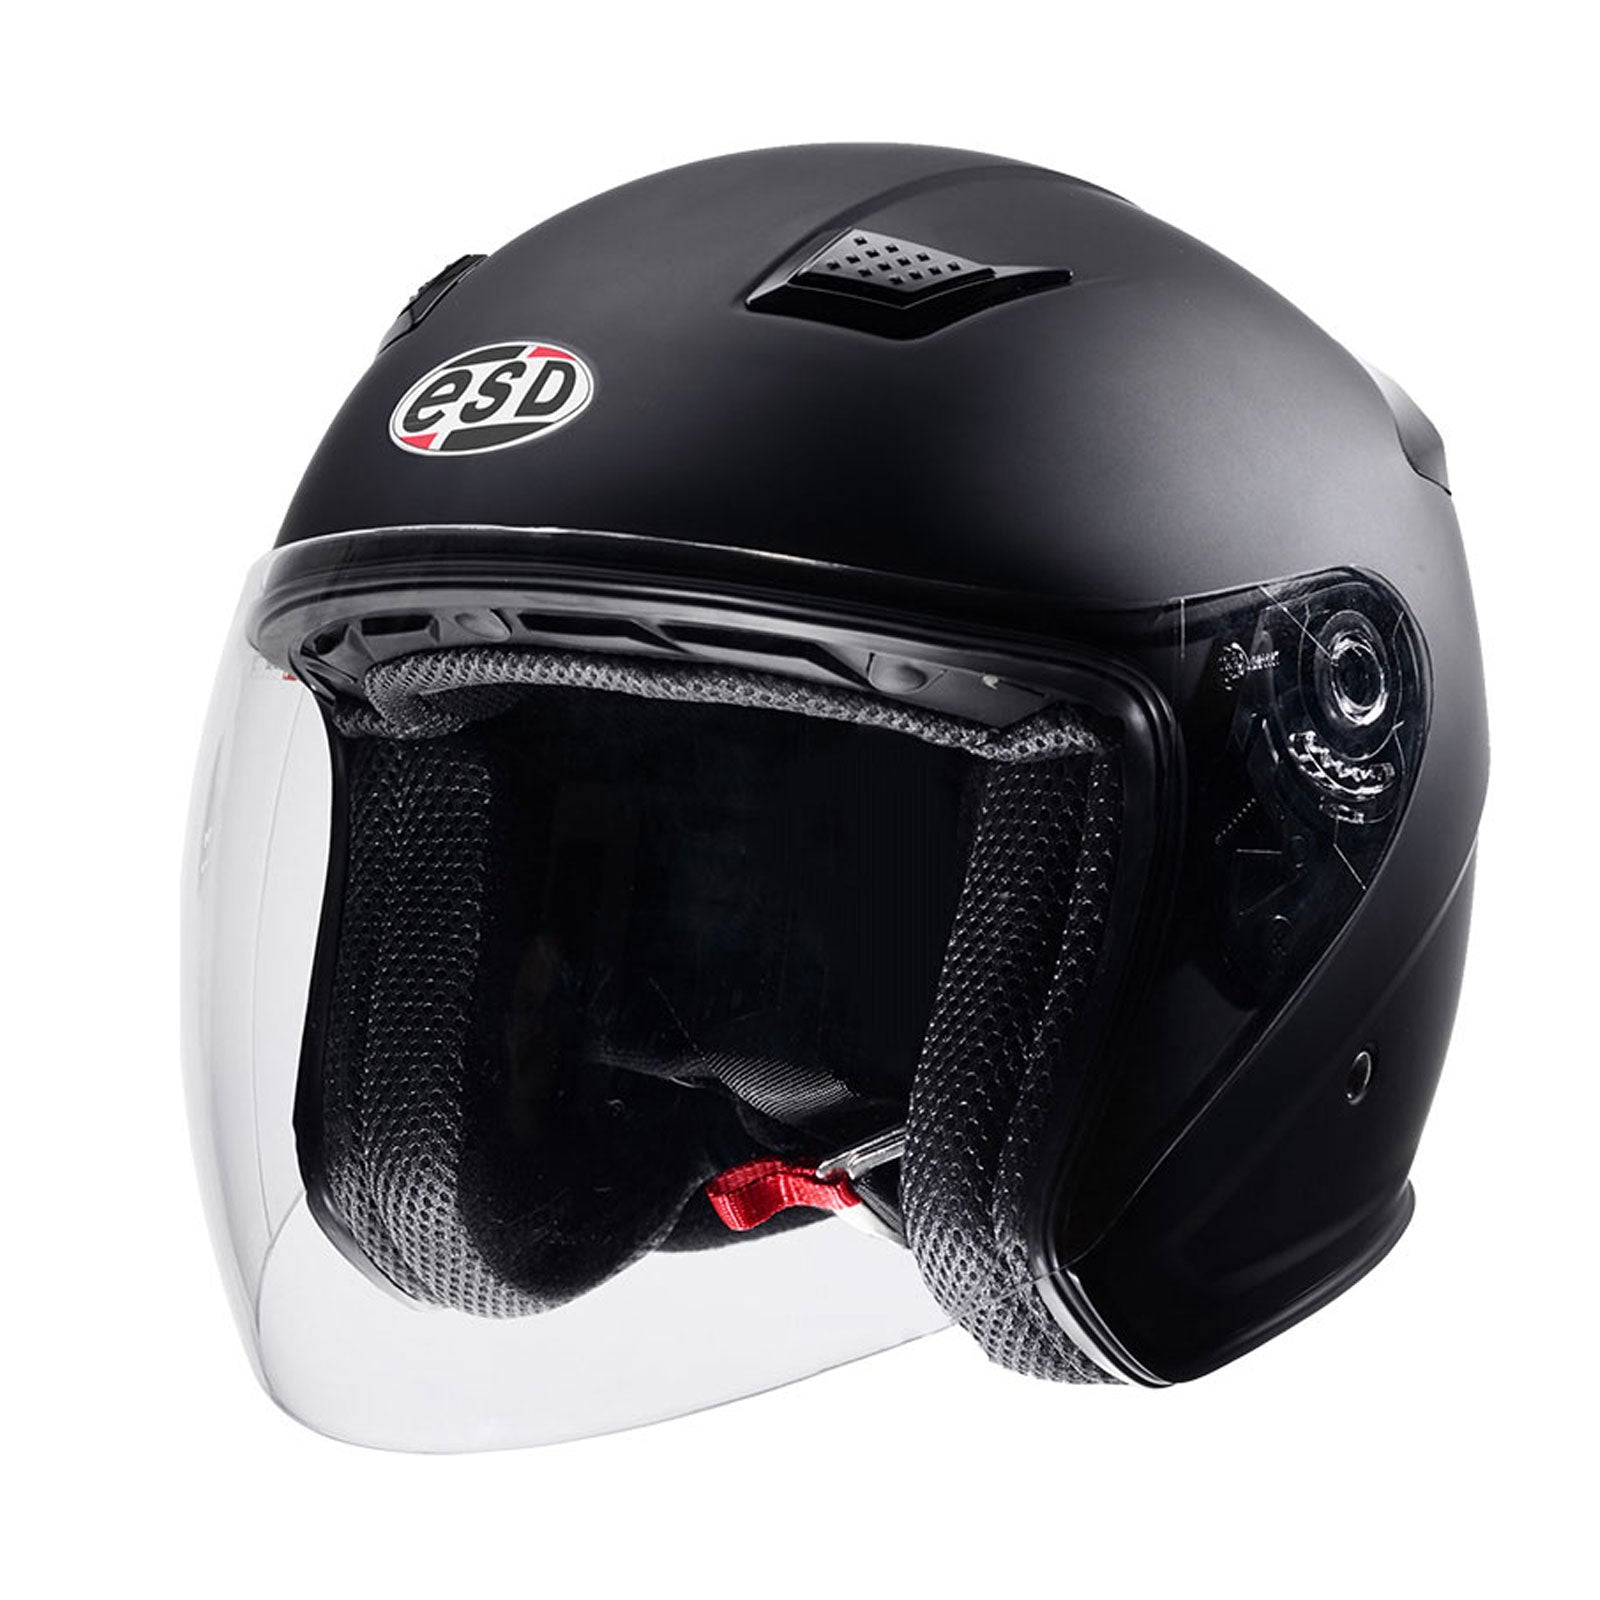 Eldorado Mens Motorcycle Helmet E10 Full Face